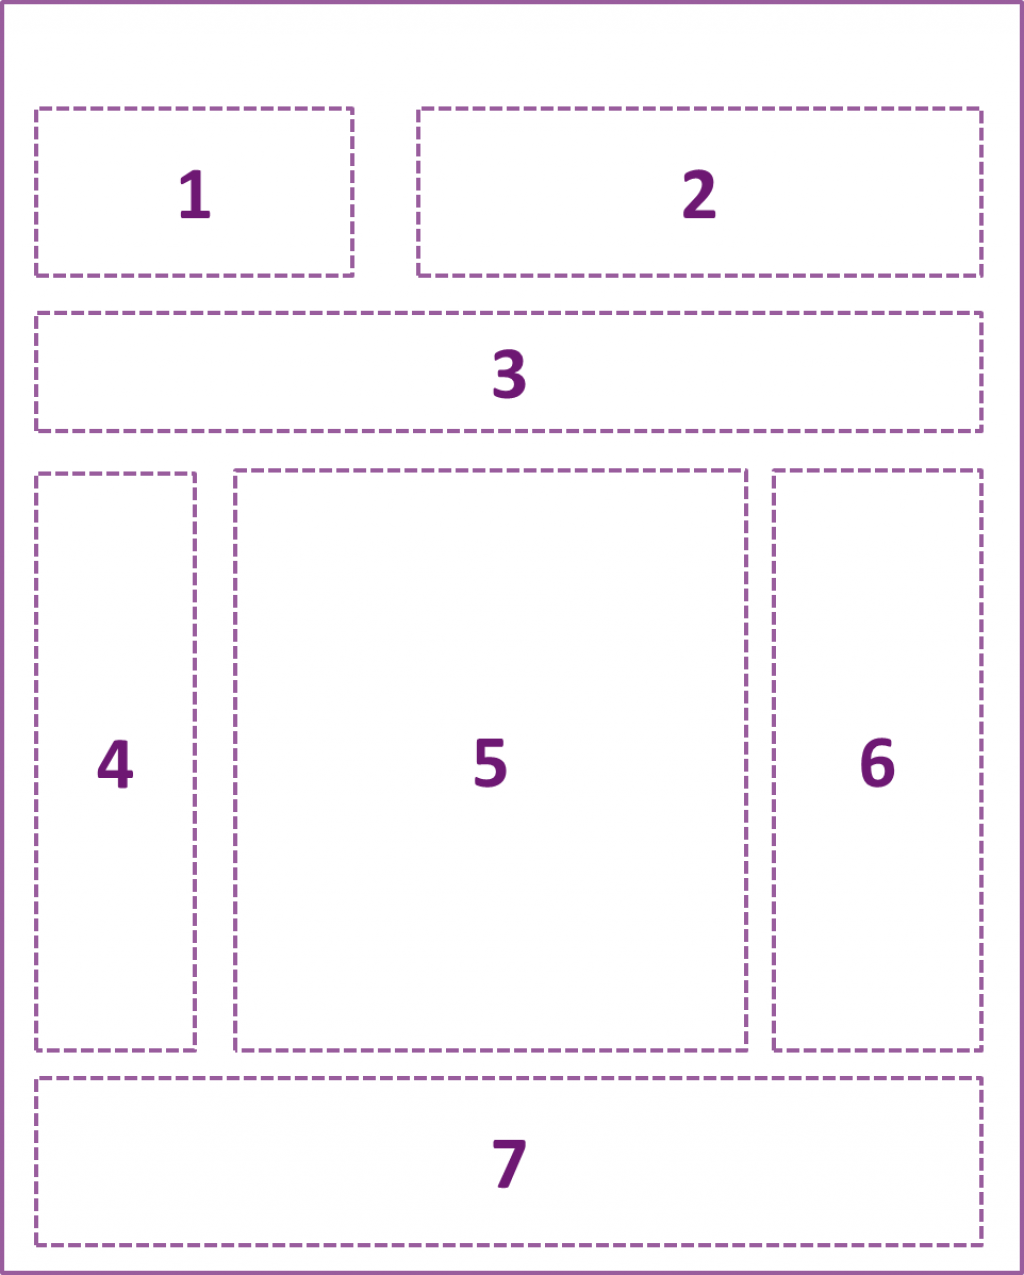 Ofte brukte hovedområder på et nettsted. Område 1: rad 1 til venstre; område 2: rad 1 til høyre; område 3: rad 2, hele linje; område 4: rad 3 til venstre; område 5: rad 3 i midten (ofte hovedinnhold); område 6: rad 3 til høyre; område 7: rad 4, hele linje